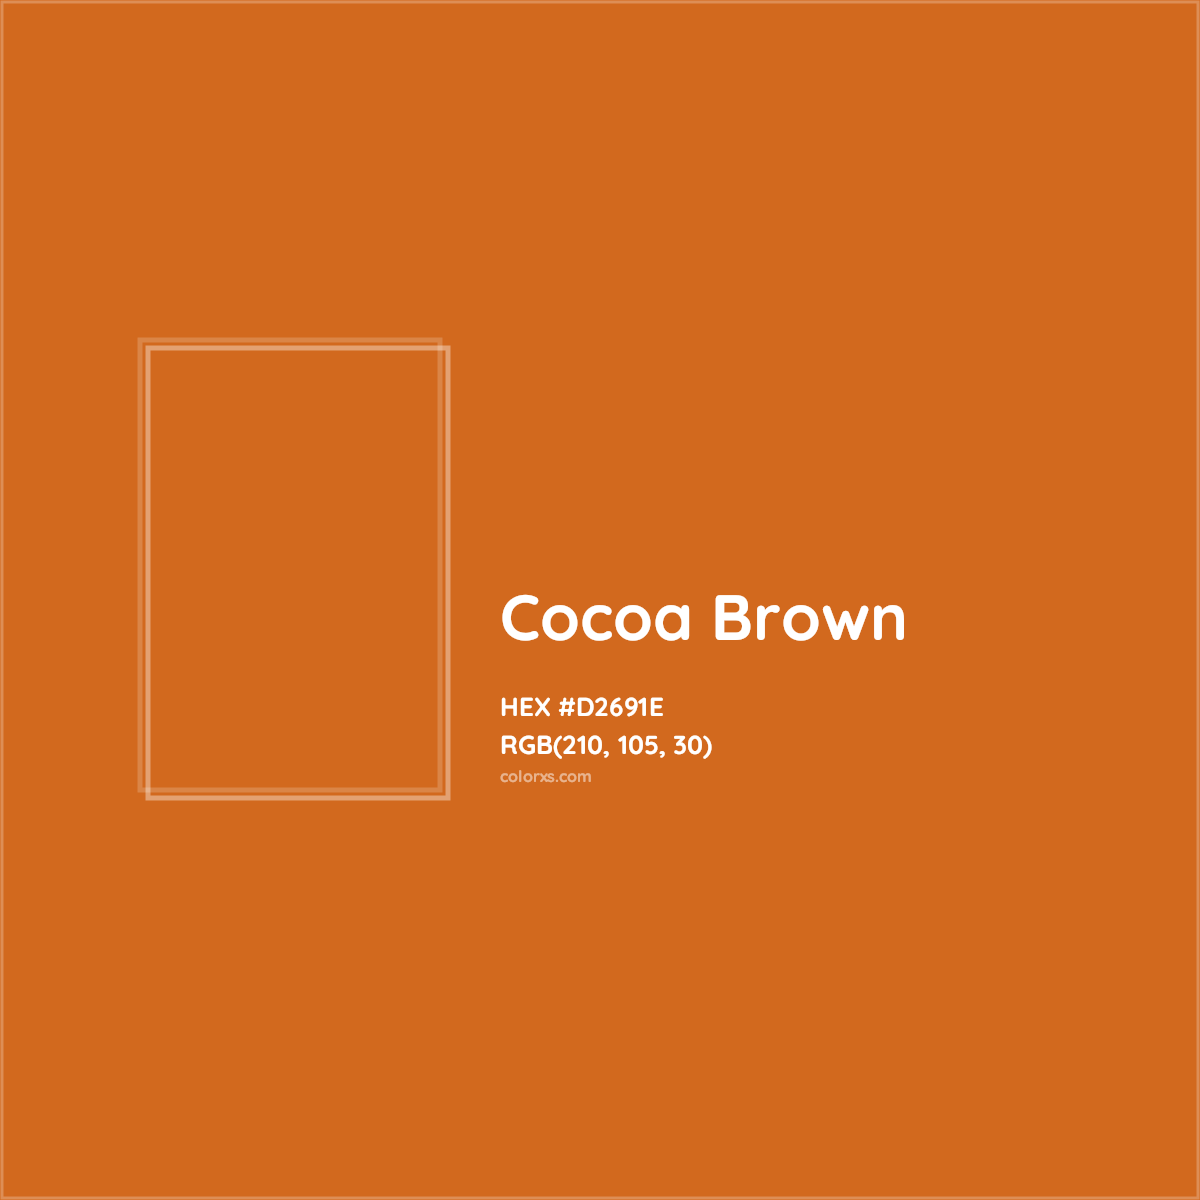 HEX #D2691E Cocoa Brown Color - Color Code